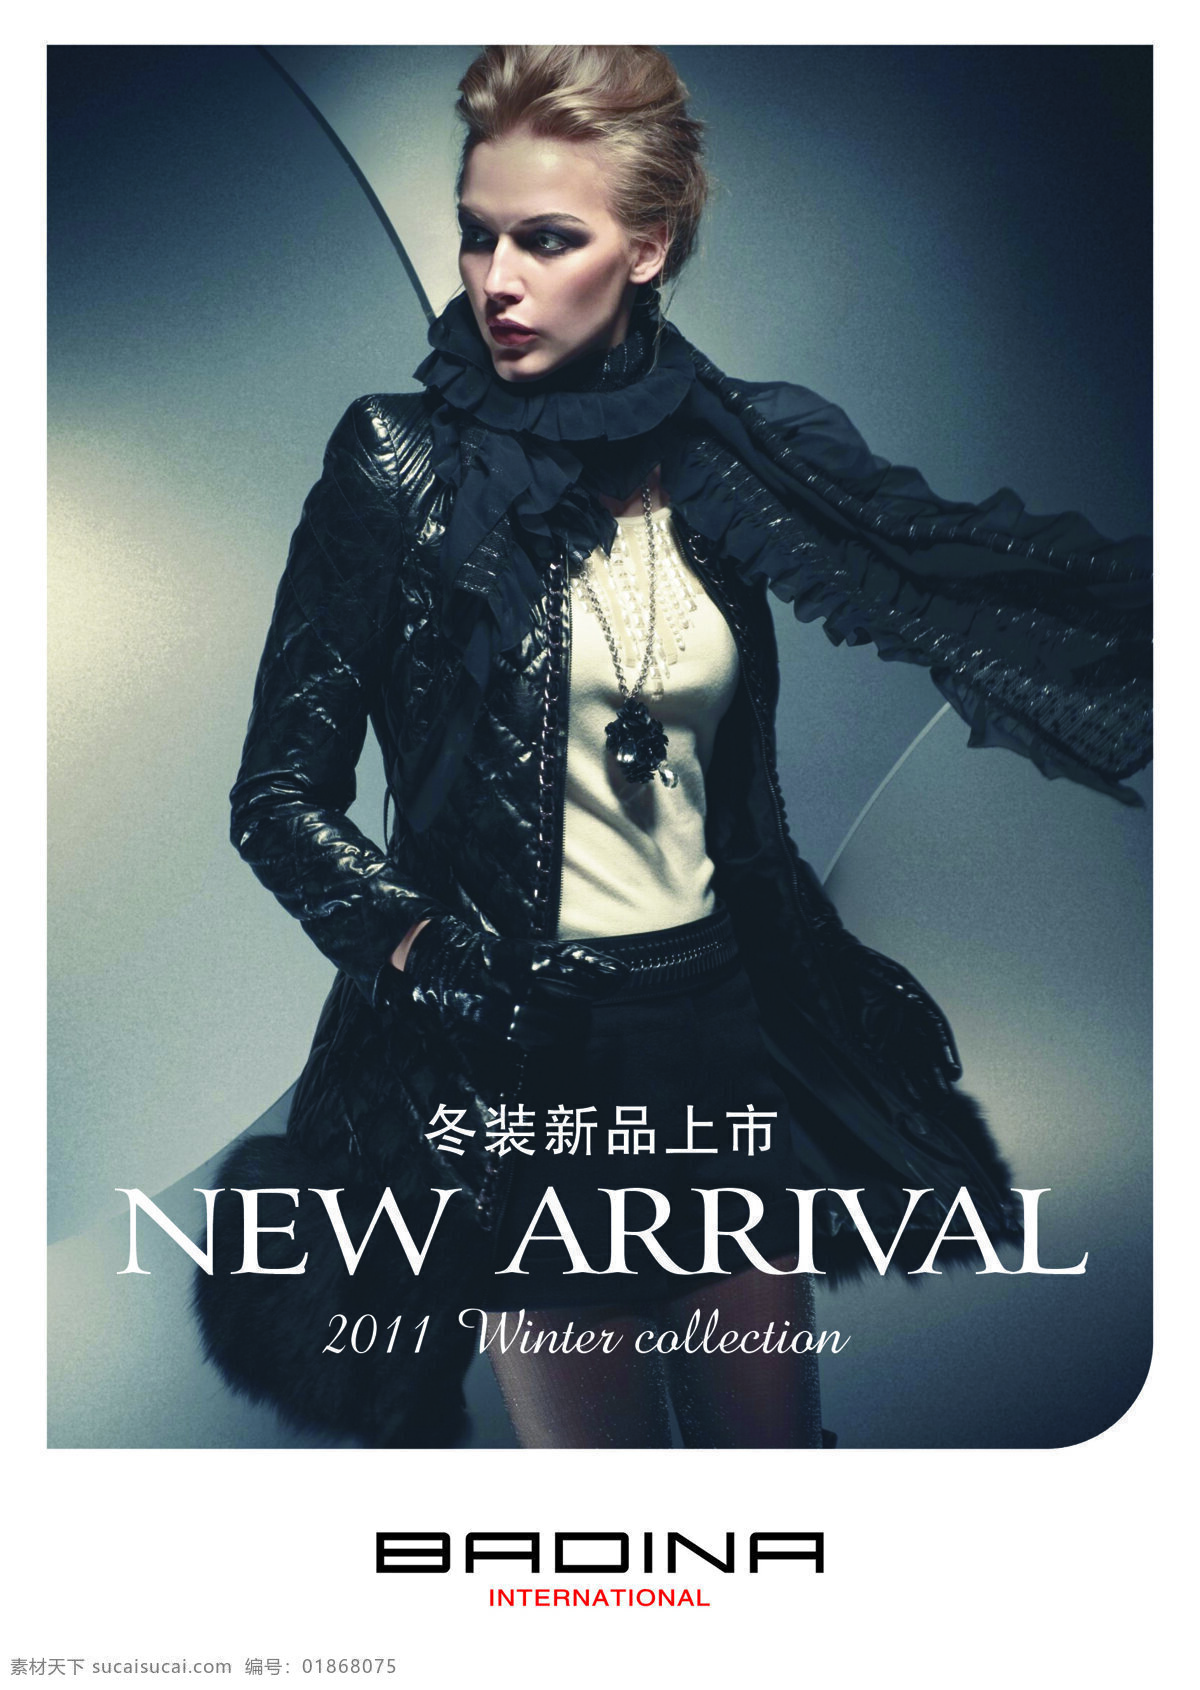 时尚 冬装 人物图库 新品上市 时尚冬装 2010 新款 上市 名模 海报 女性妇女 其他海报设计